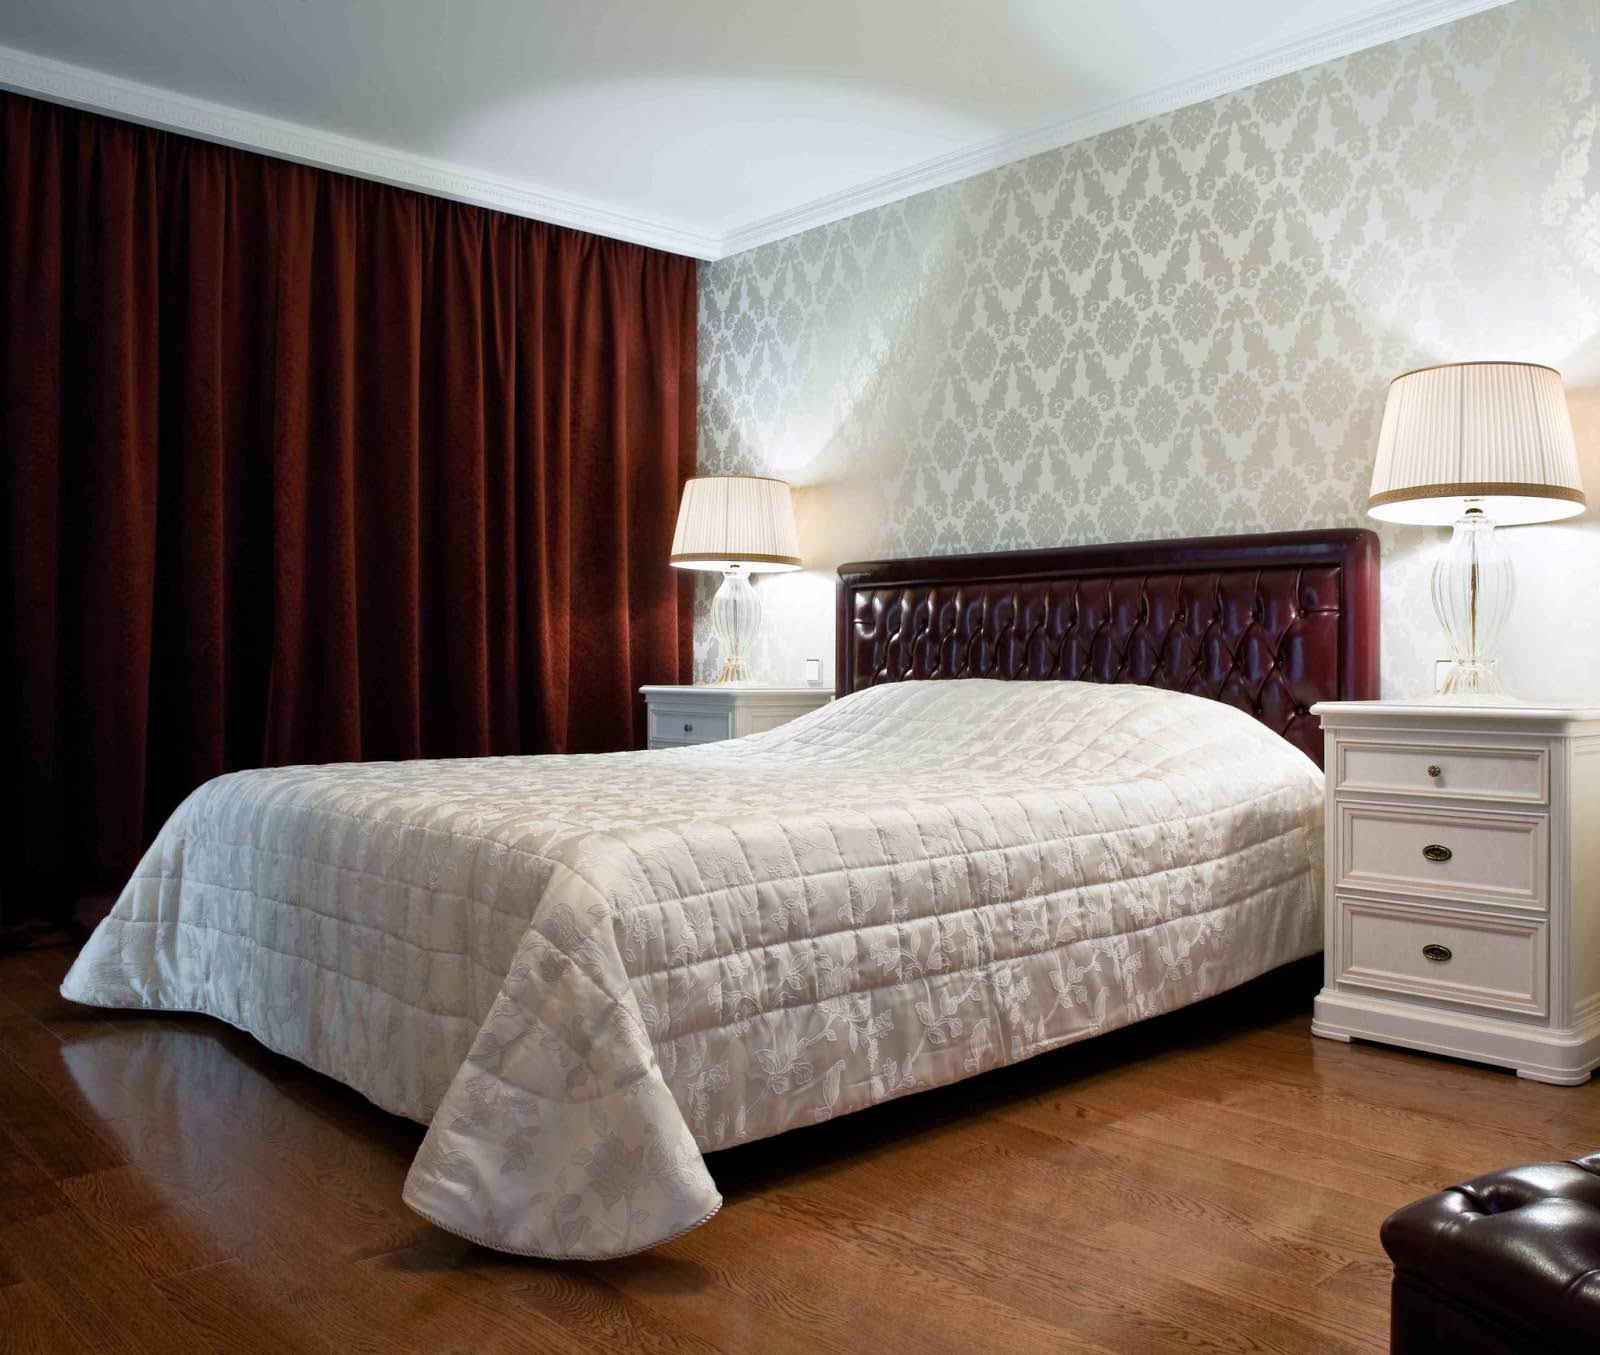 Burgunderfarbene Vorhänge im Schlafzimmerdesign mit grauer Tapete